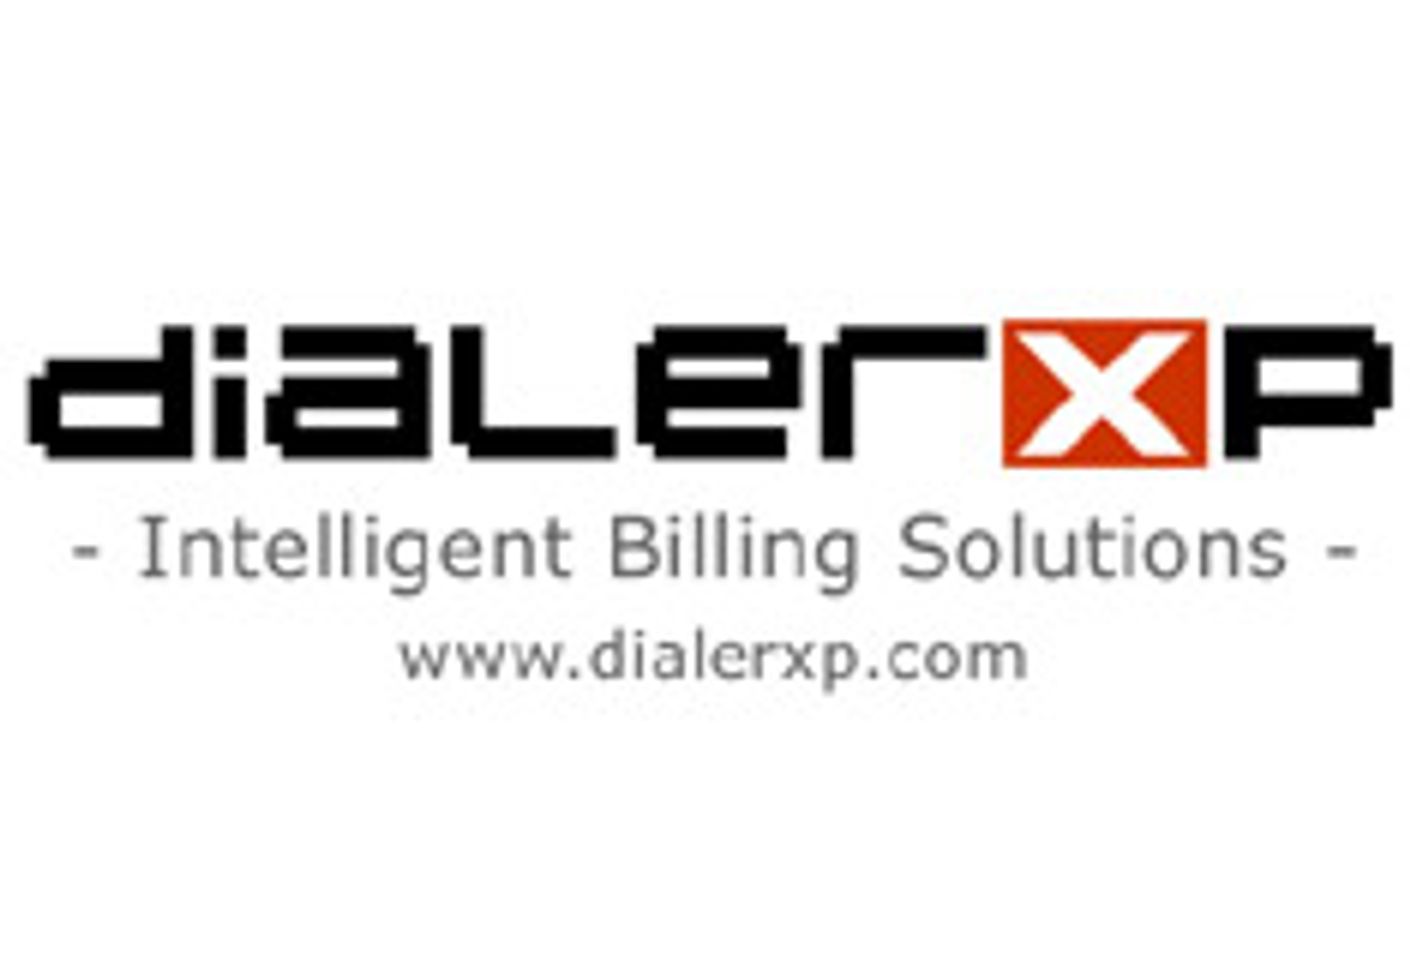 DialerXP Signs Prague Girls Live